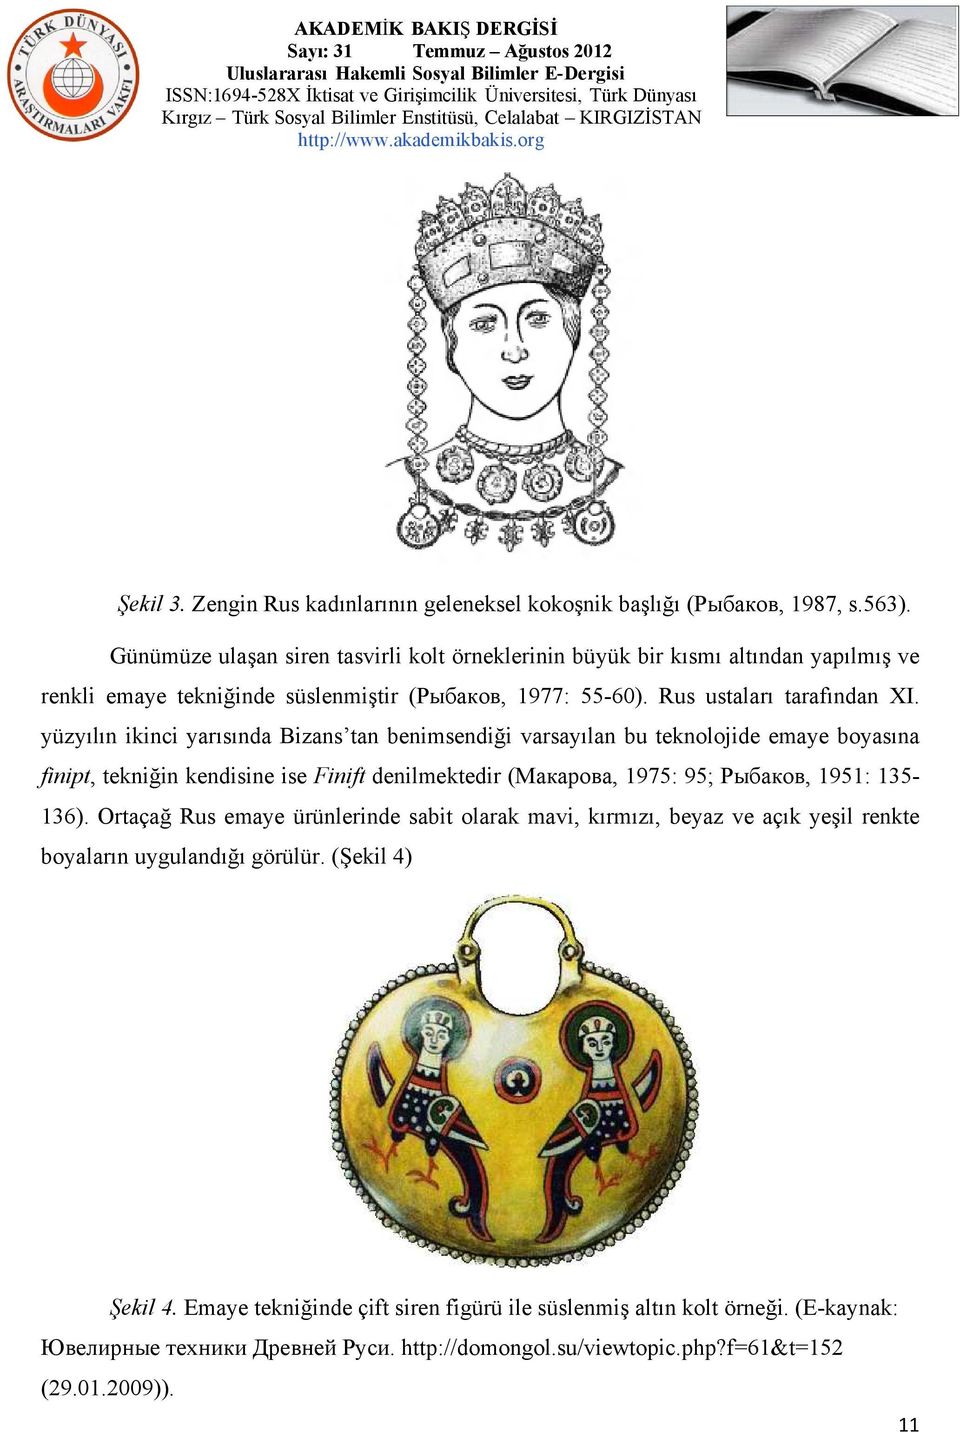 yüzyılın ikinci yarısında Bizans tan benimsendiği varsayılan bu teknolojide emaye boyasına finipt, tekniğin kendisine ise Finift denilmektedir (Макарова, 1975: 95; Рыбаков, 1951: 135-136).